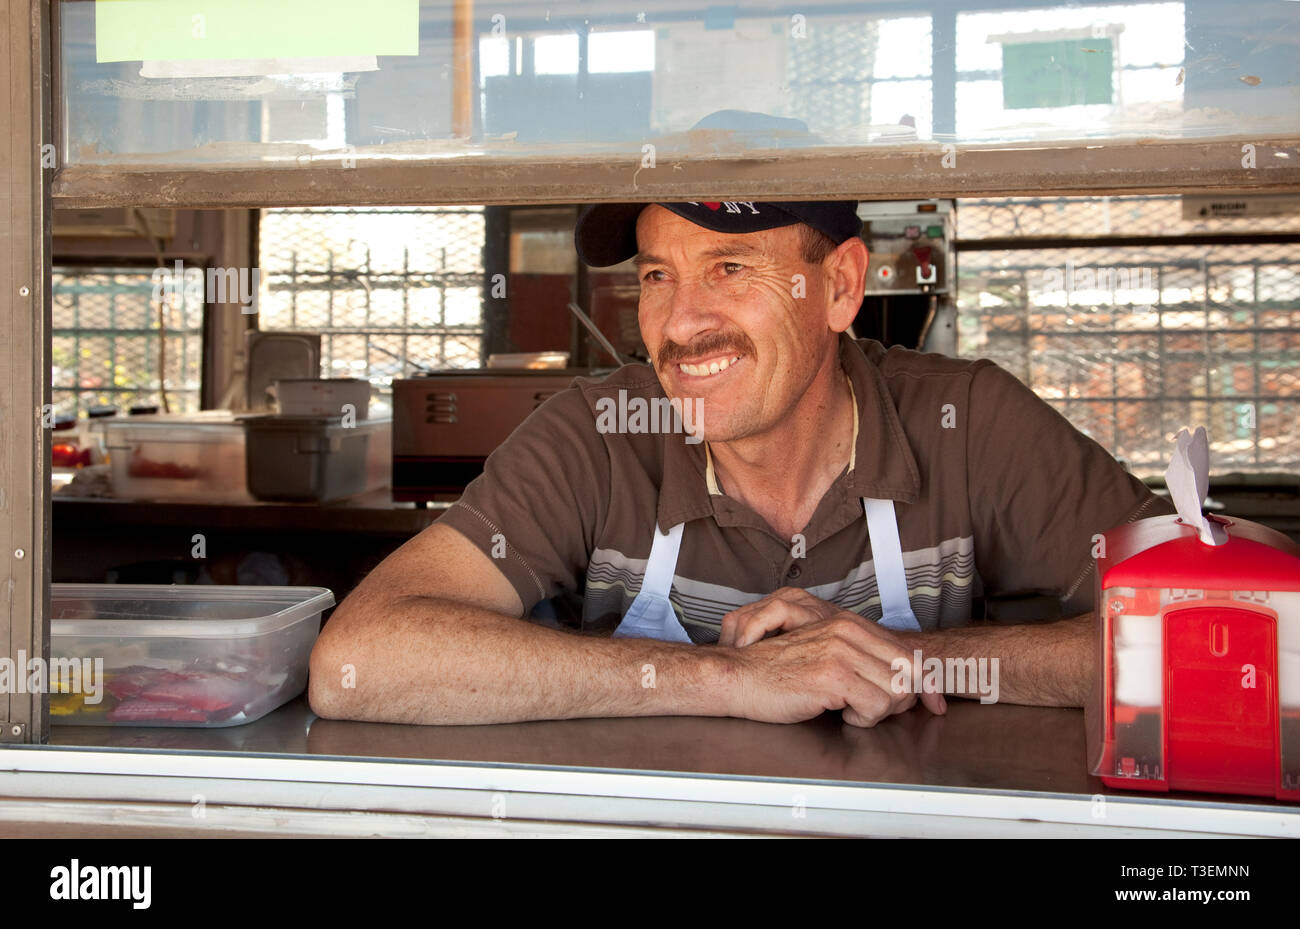 Heureux, souriant homme latino hispanique de l'industrie des services de travail emploi restaurant col bleu Banque D'Images